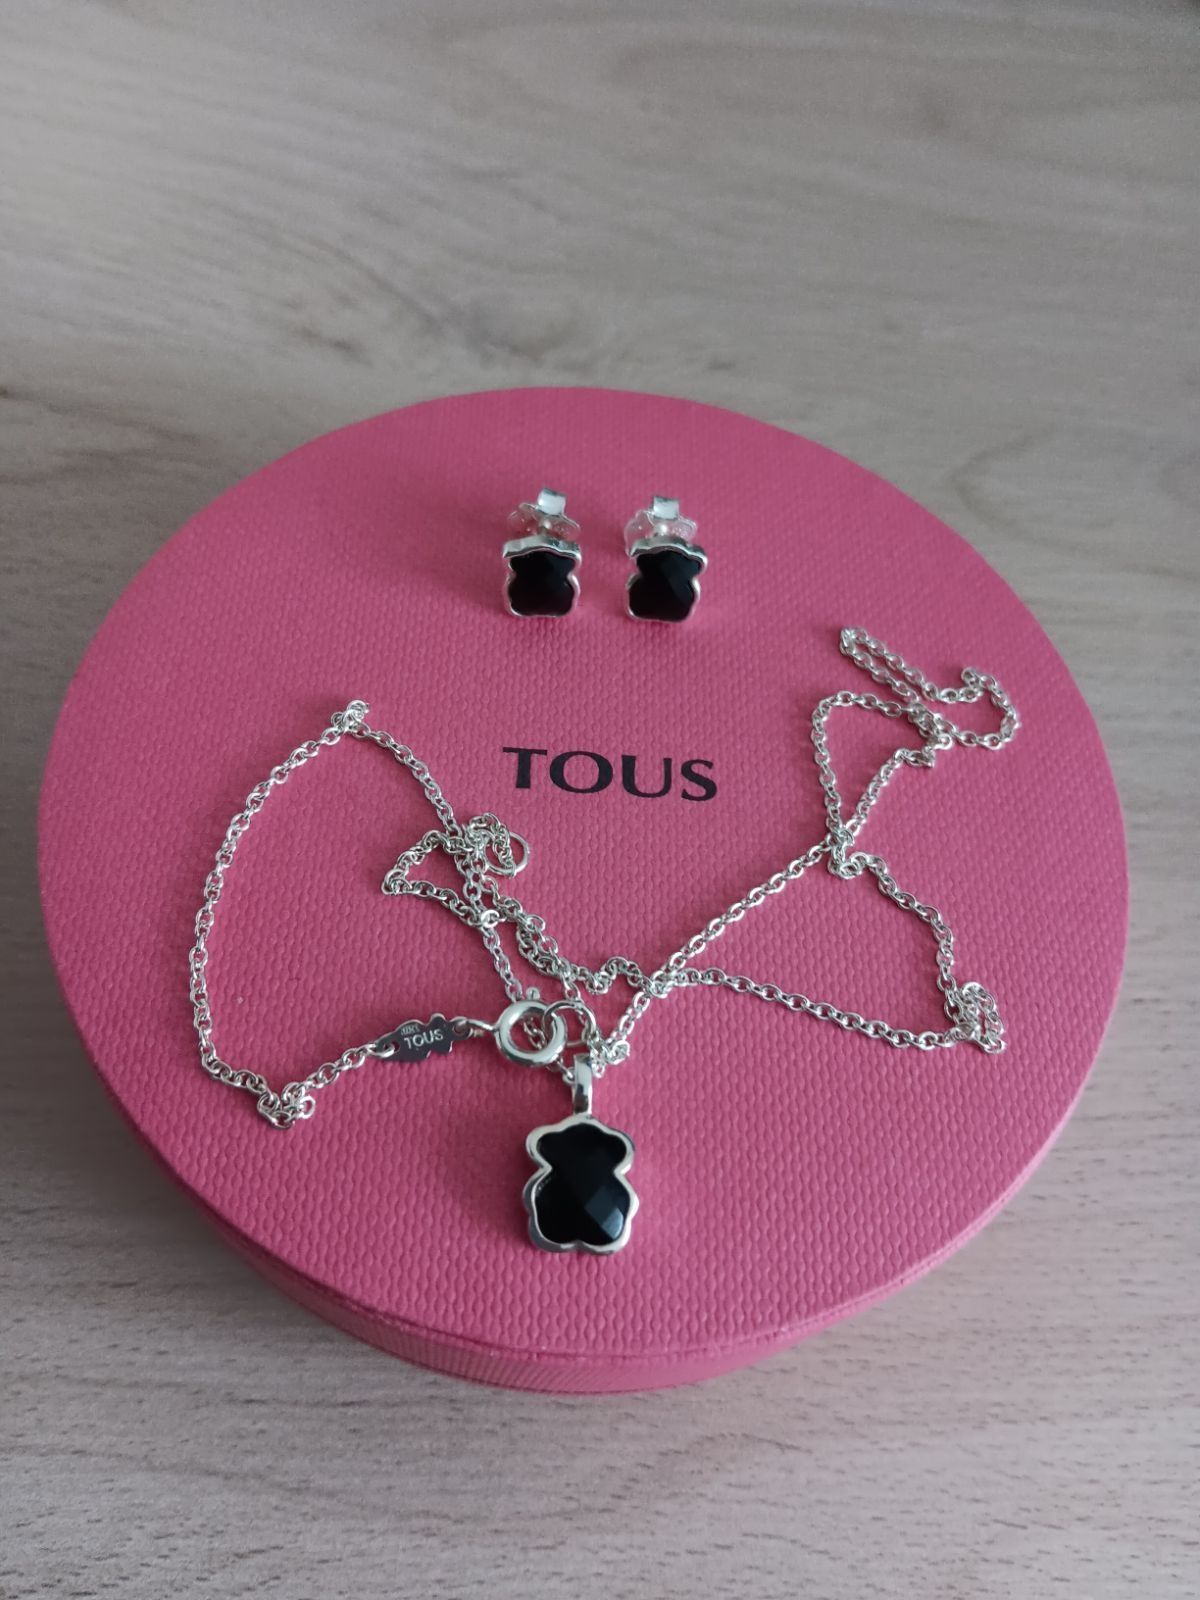 Komplet biżuterii Tous, naszyjnik Tous, kolczyki TOUS